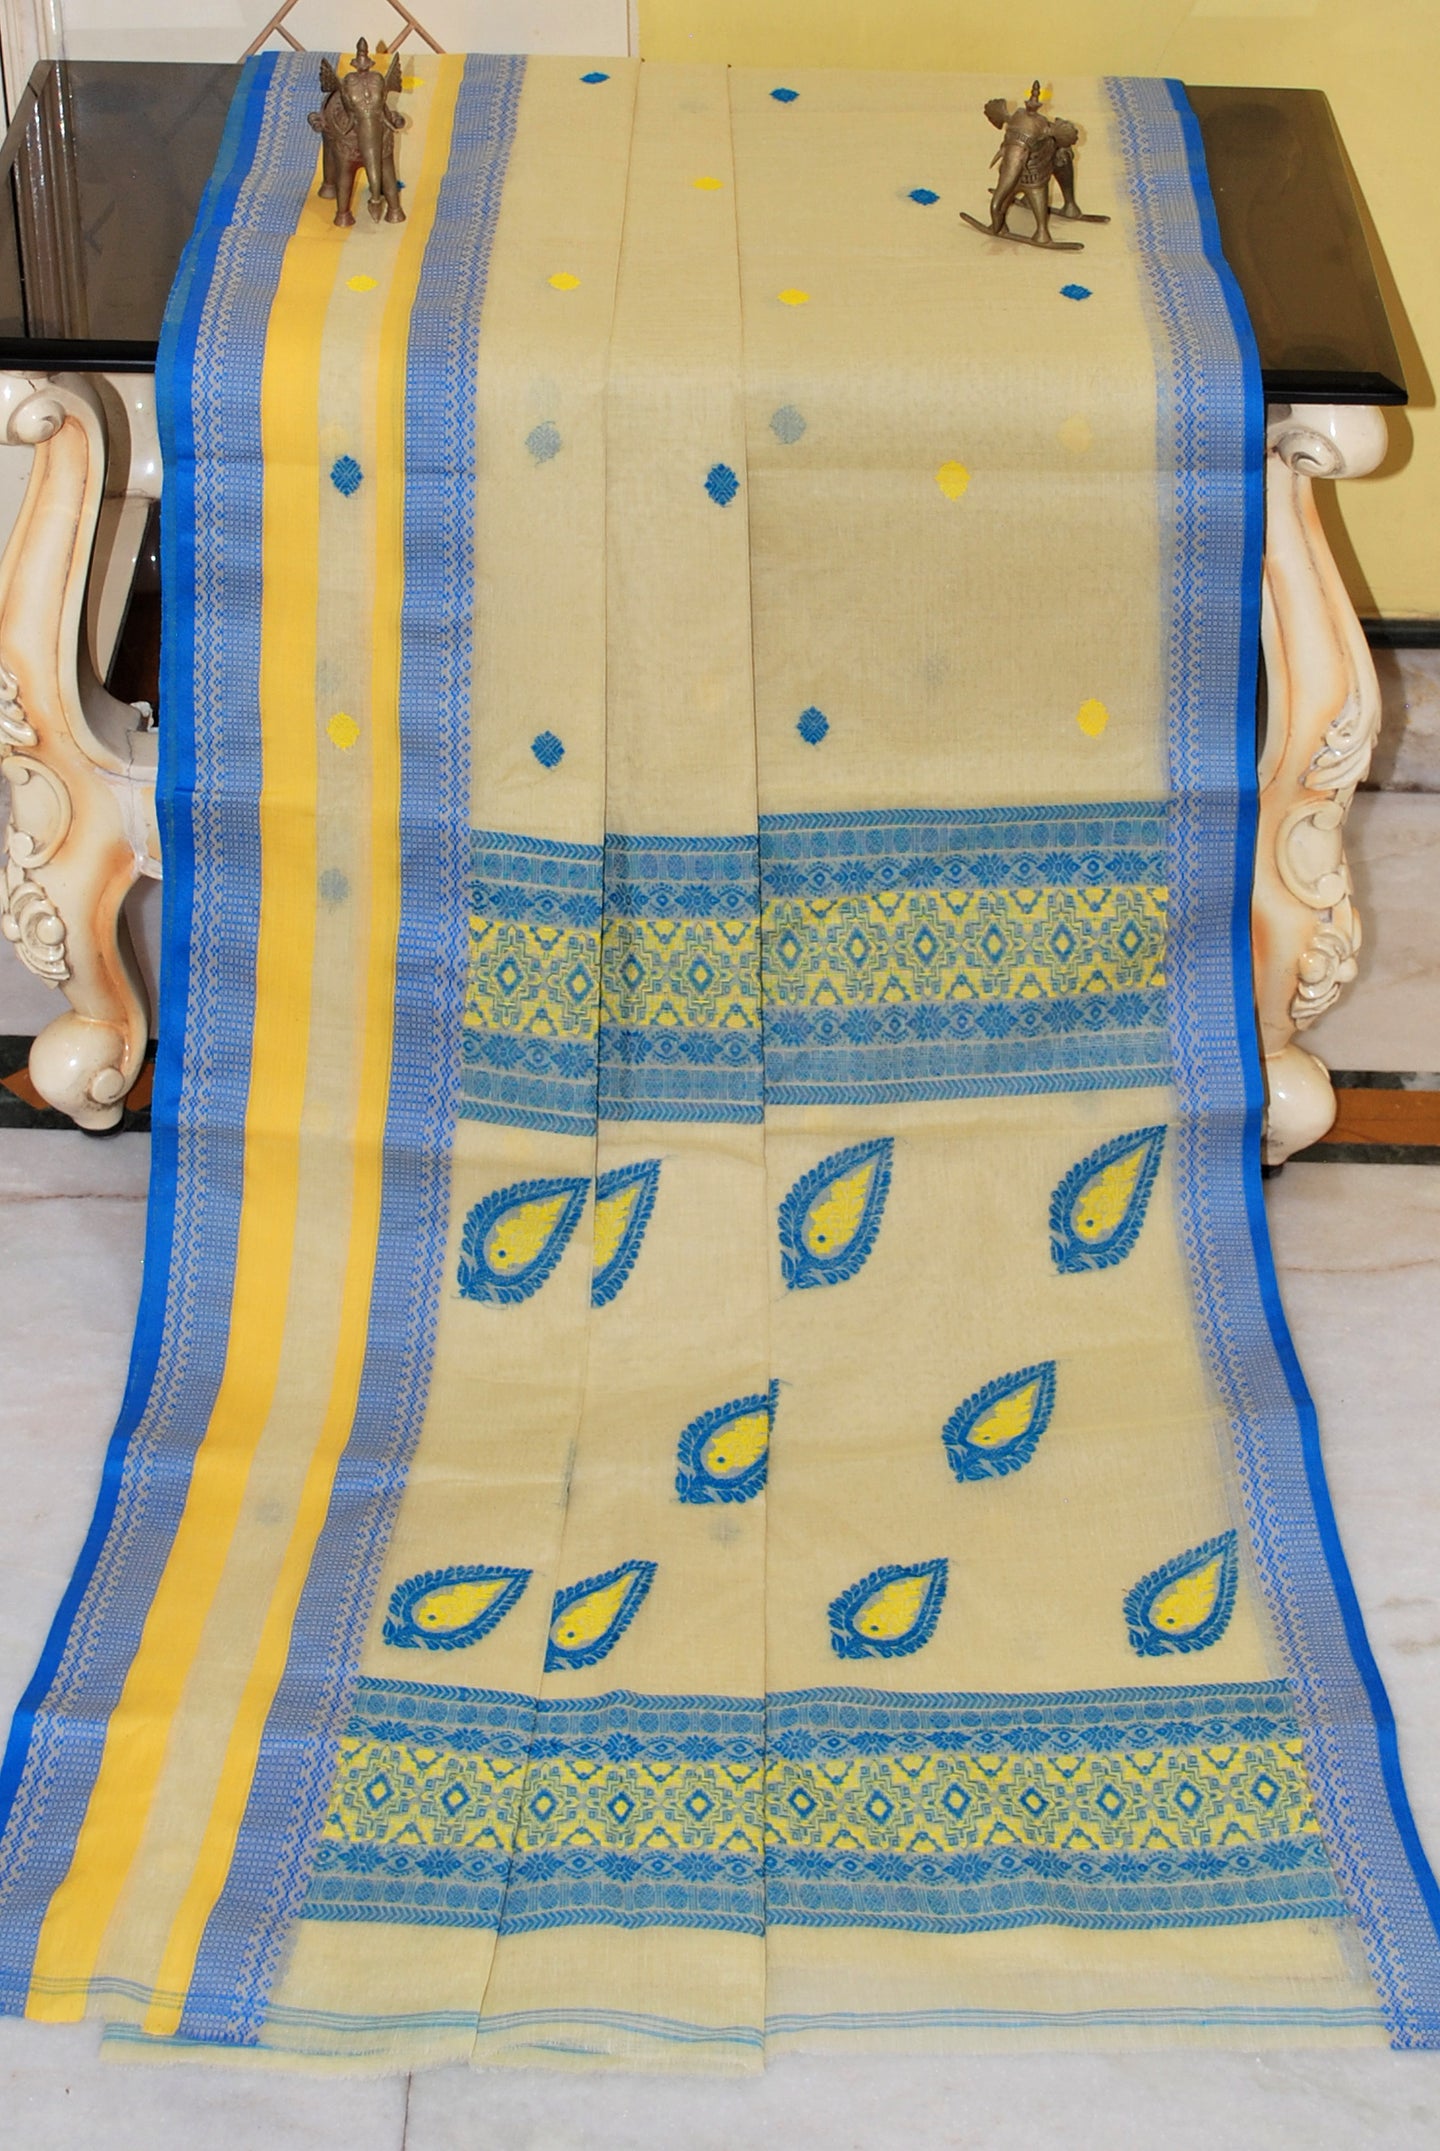 Premium Quality Bengal Handloom Minakari Bomkai Cotton Saree in Cream, Azure Blue and Yolk Yellow